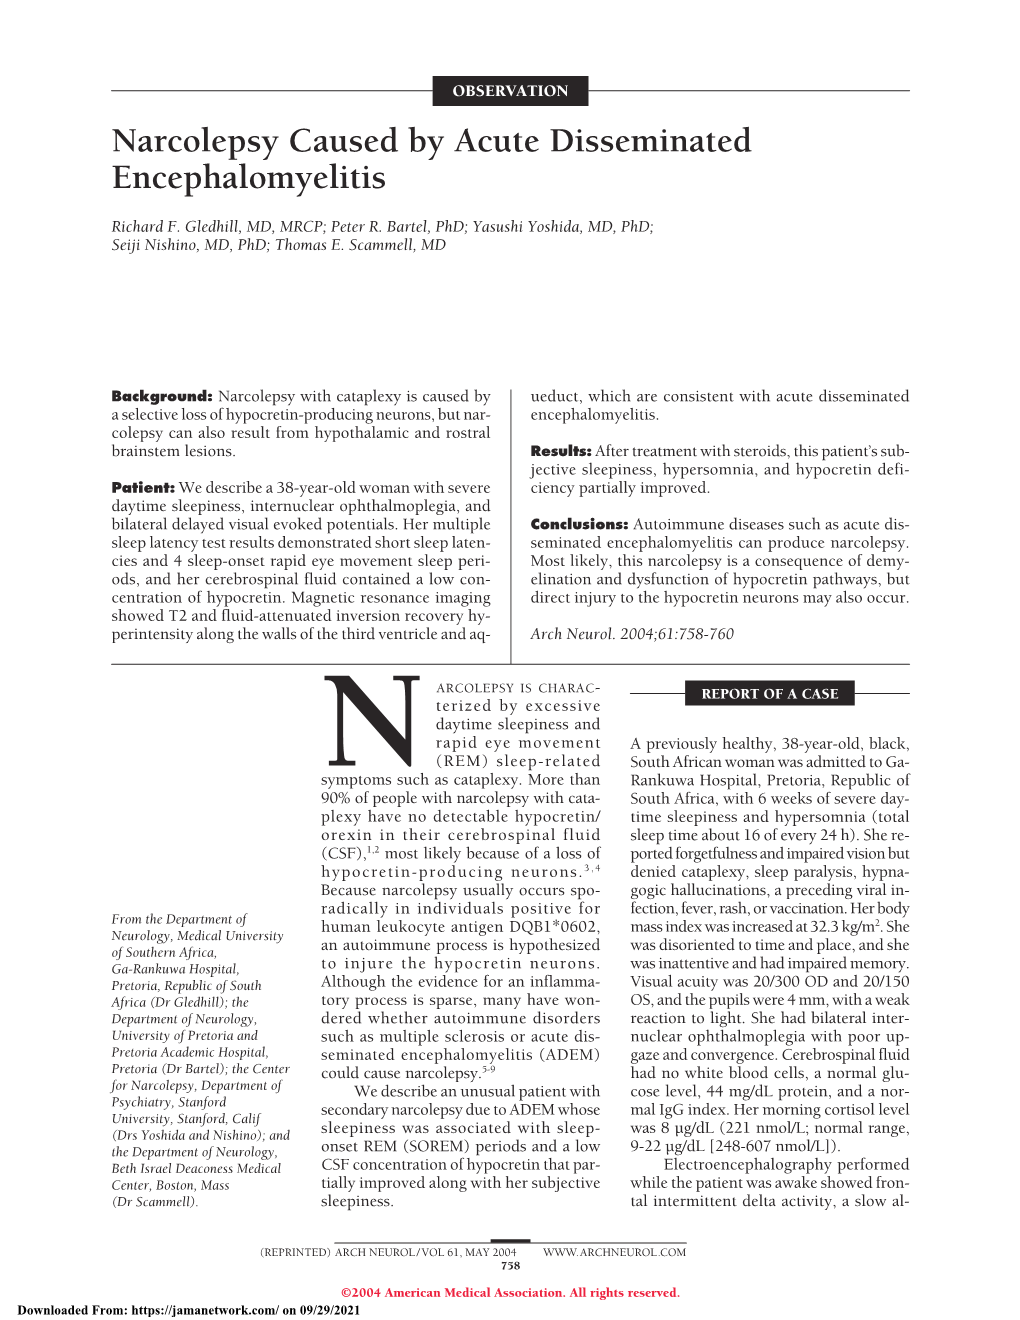 Narcolepsy Caused by Acute Disseminated Encephalomyelitis